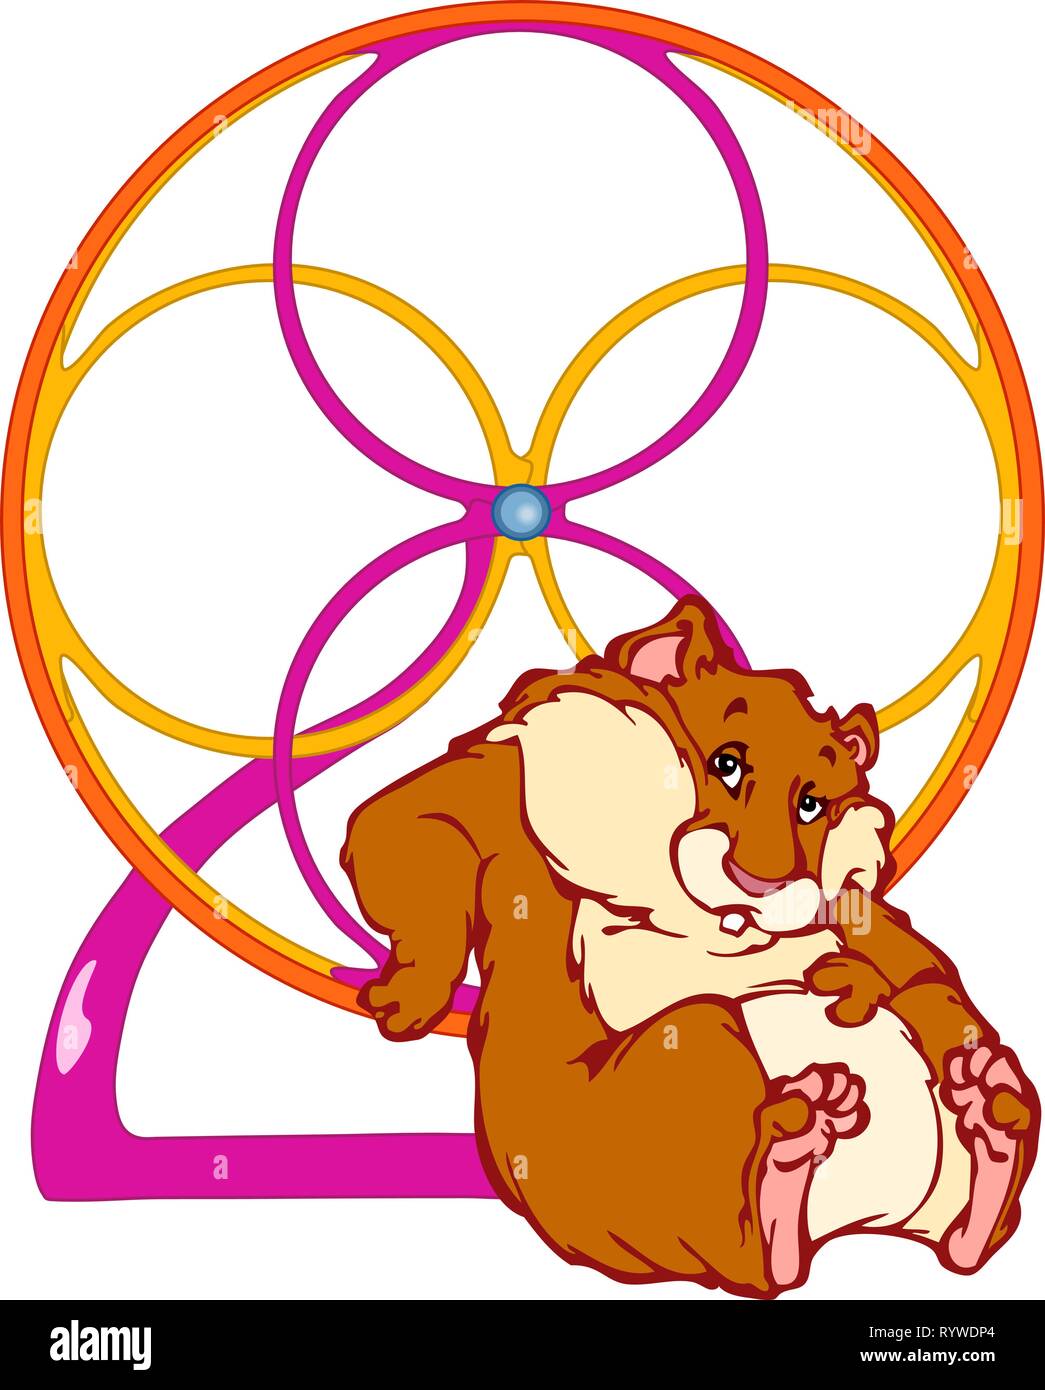 Dans l'illustration vectorielle, un drôle de hamster rouge se trouve près de la roue d'un jouet, il a un regard amusé et paresseux. Illustration dans le style dessin animé isolé sur whit Illustration de Vecteur